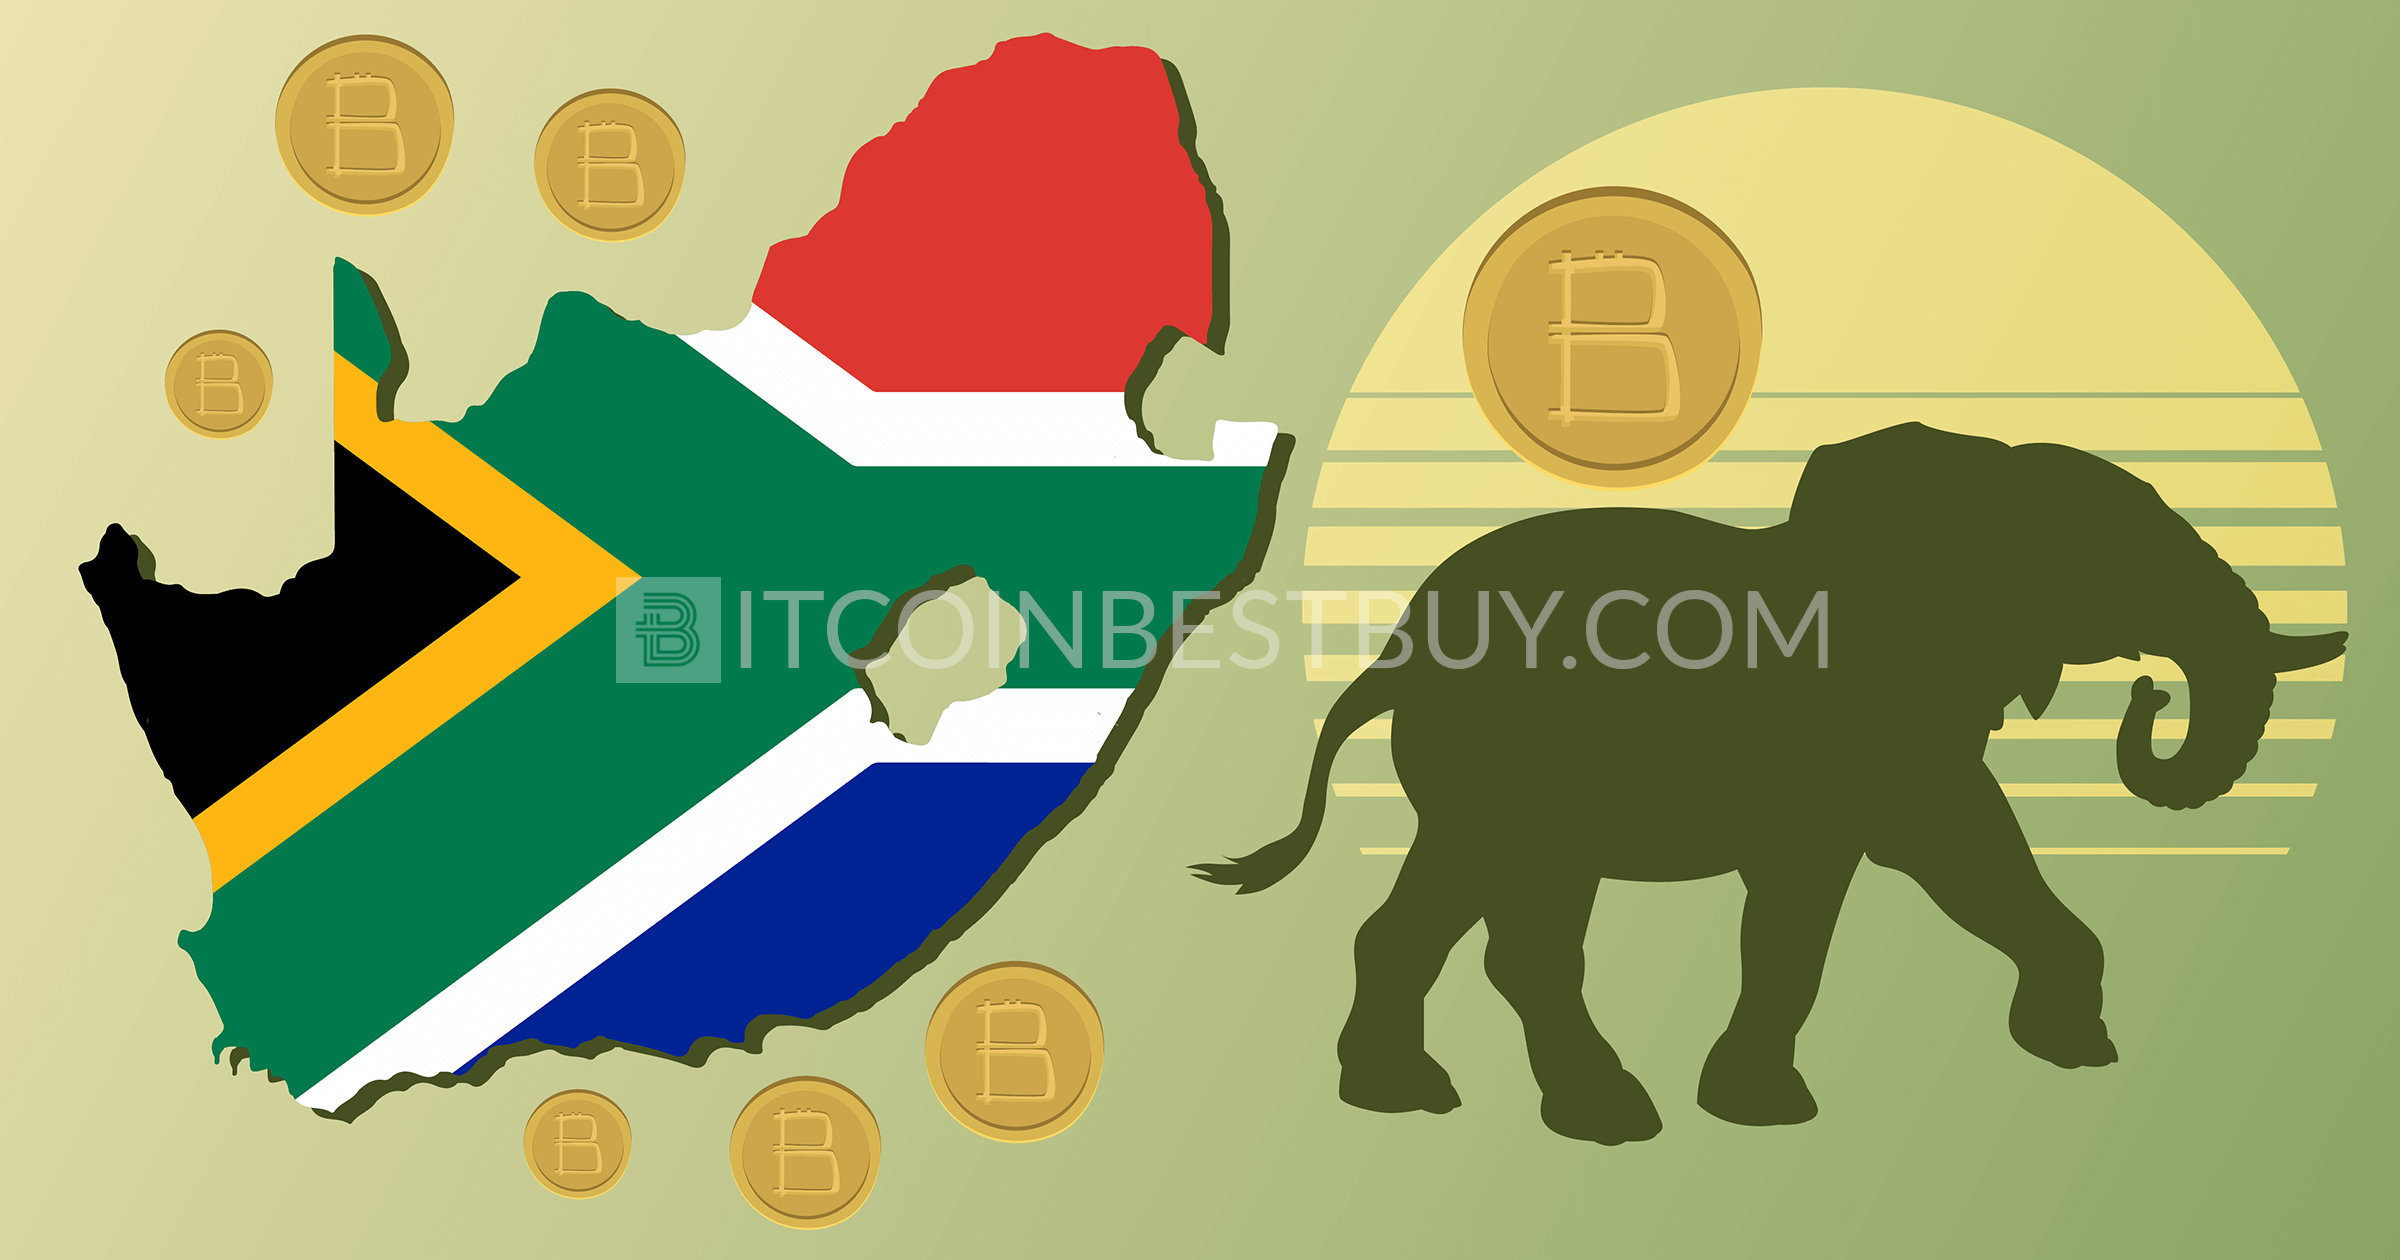 Kaip pirkti bitkoiną Pietų Afrikoje